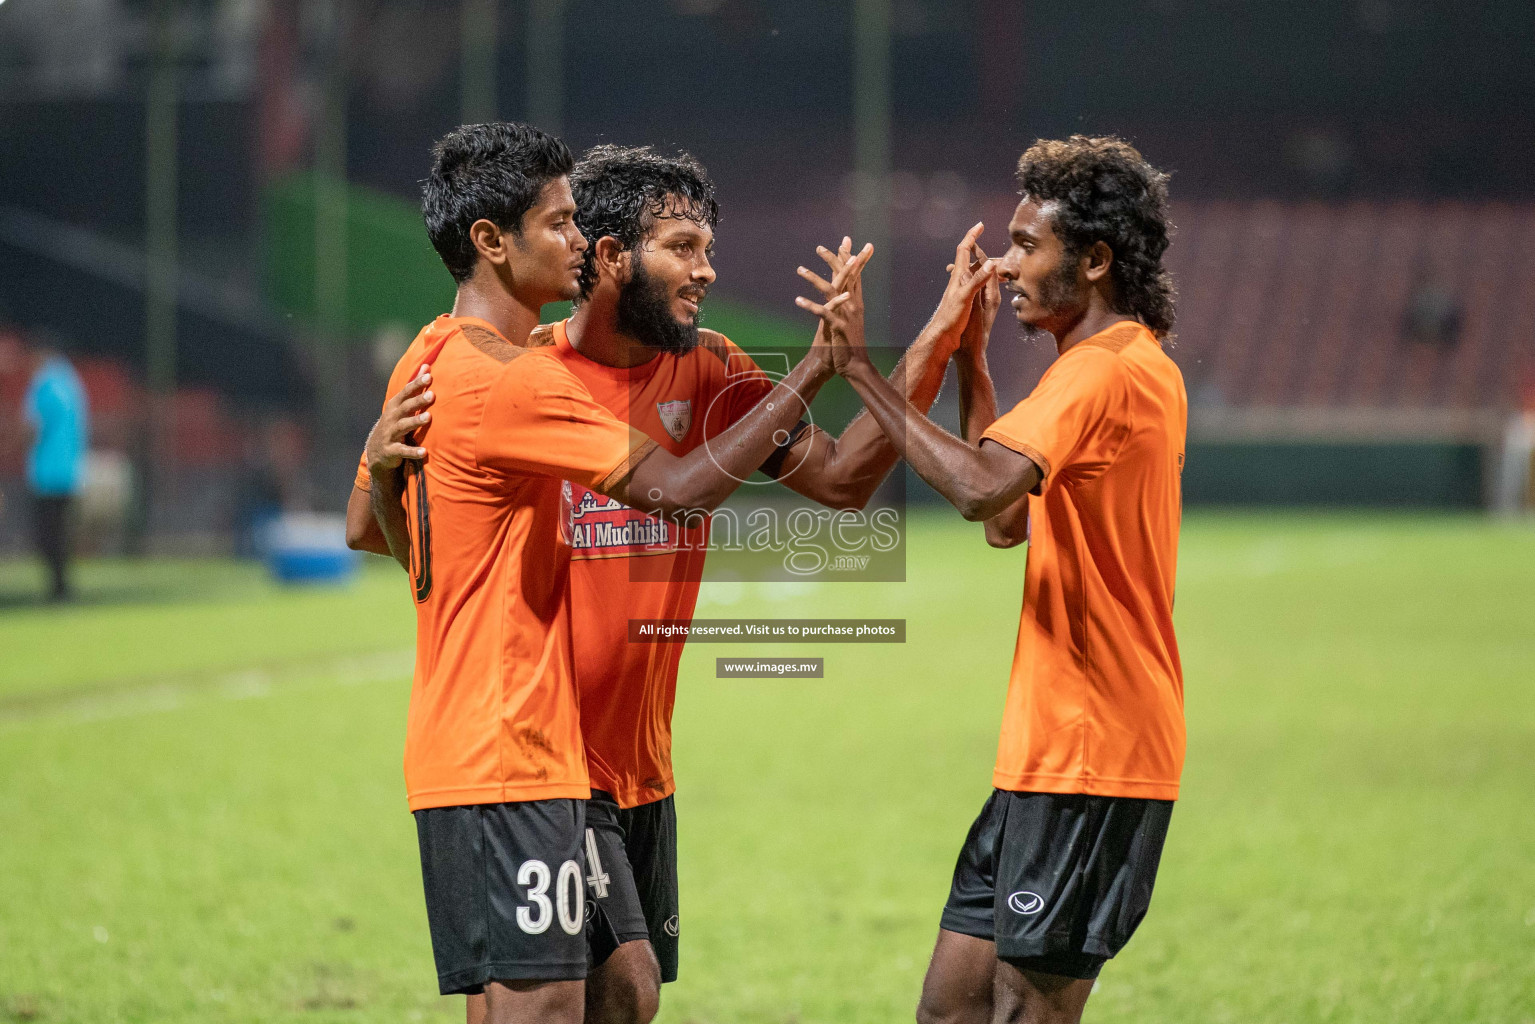 Eagles vs Da Grande SC in Dhiraagu Dhivehi Premier League 2019, in Male' Maldives on 24th Sep 2019. Photos:Suadh Abdul Sattar / images.mv